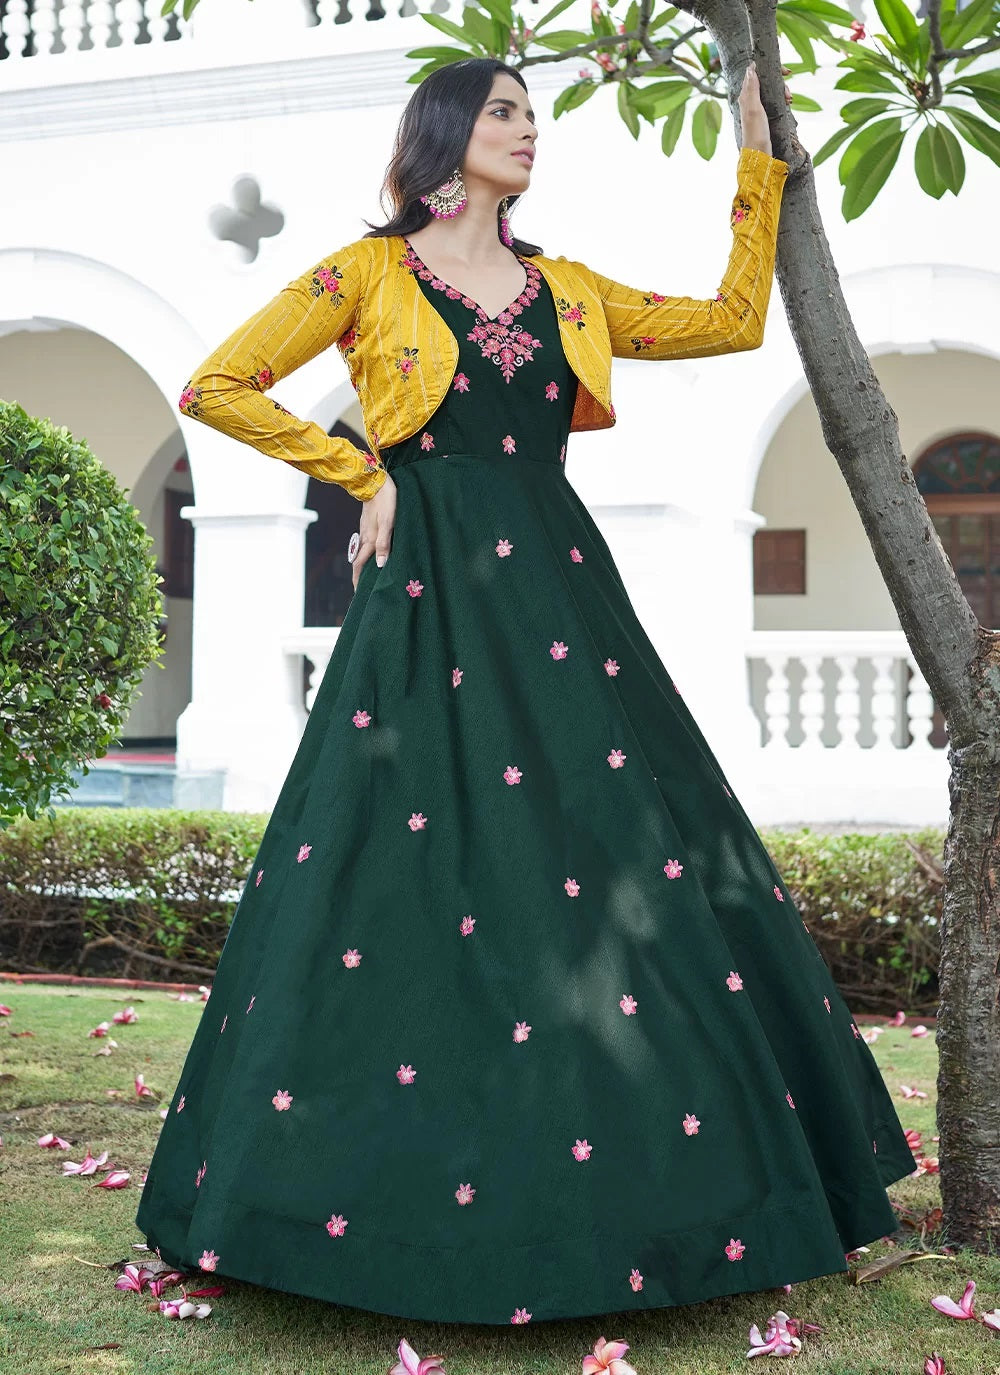 Koti Style Green Cotton Anarkali Long Gown